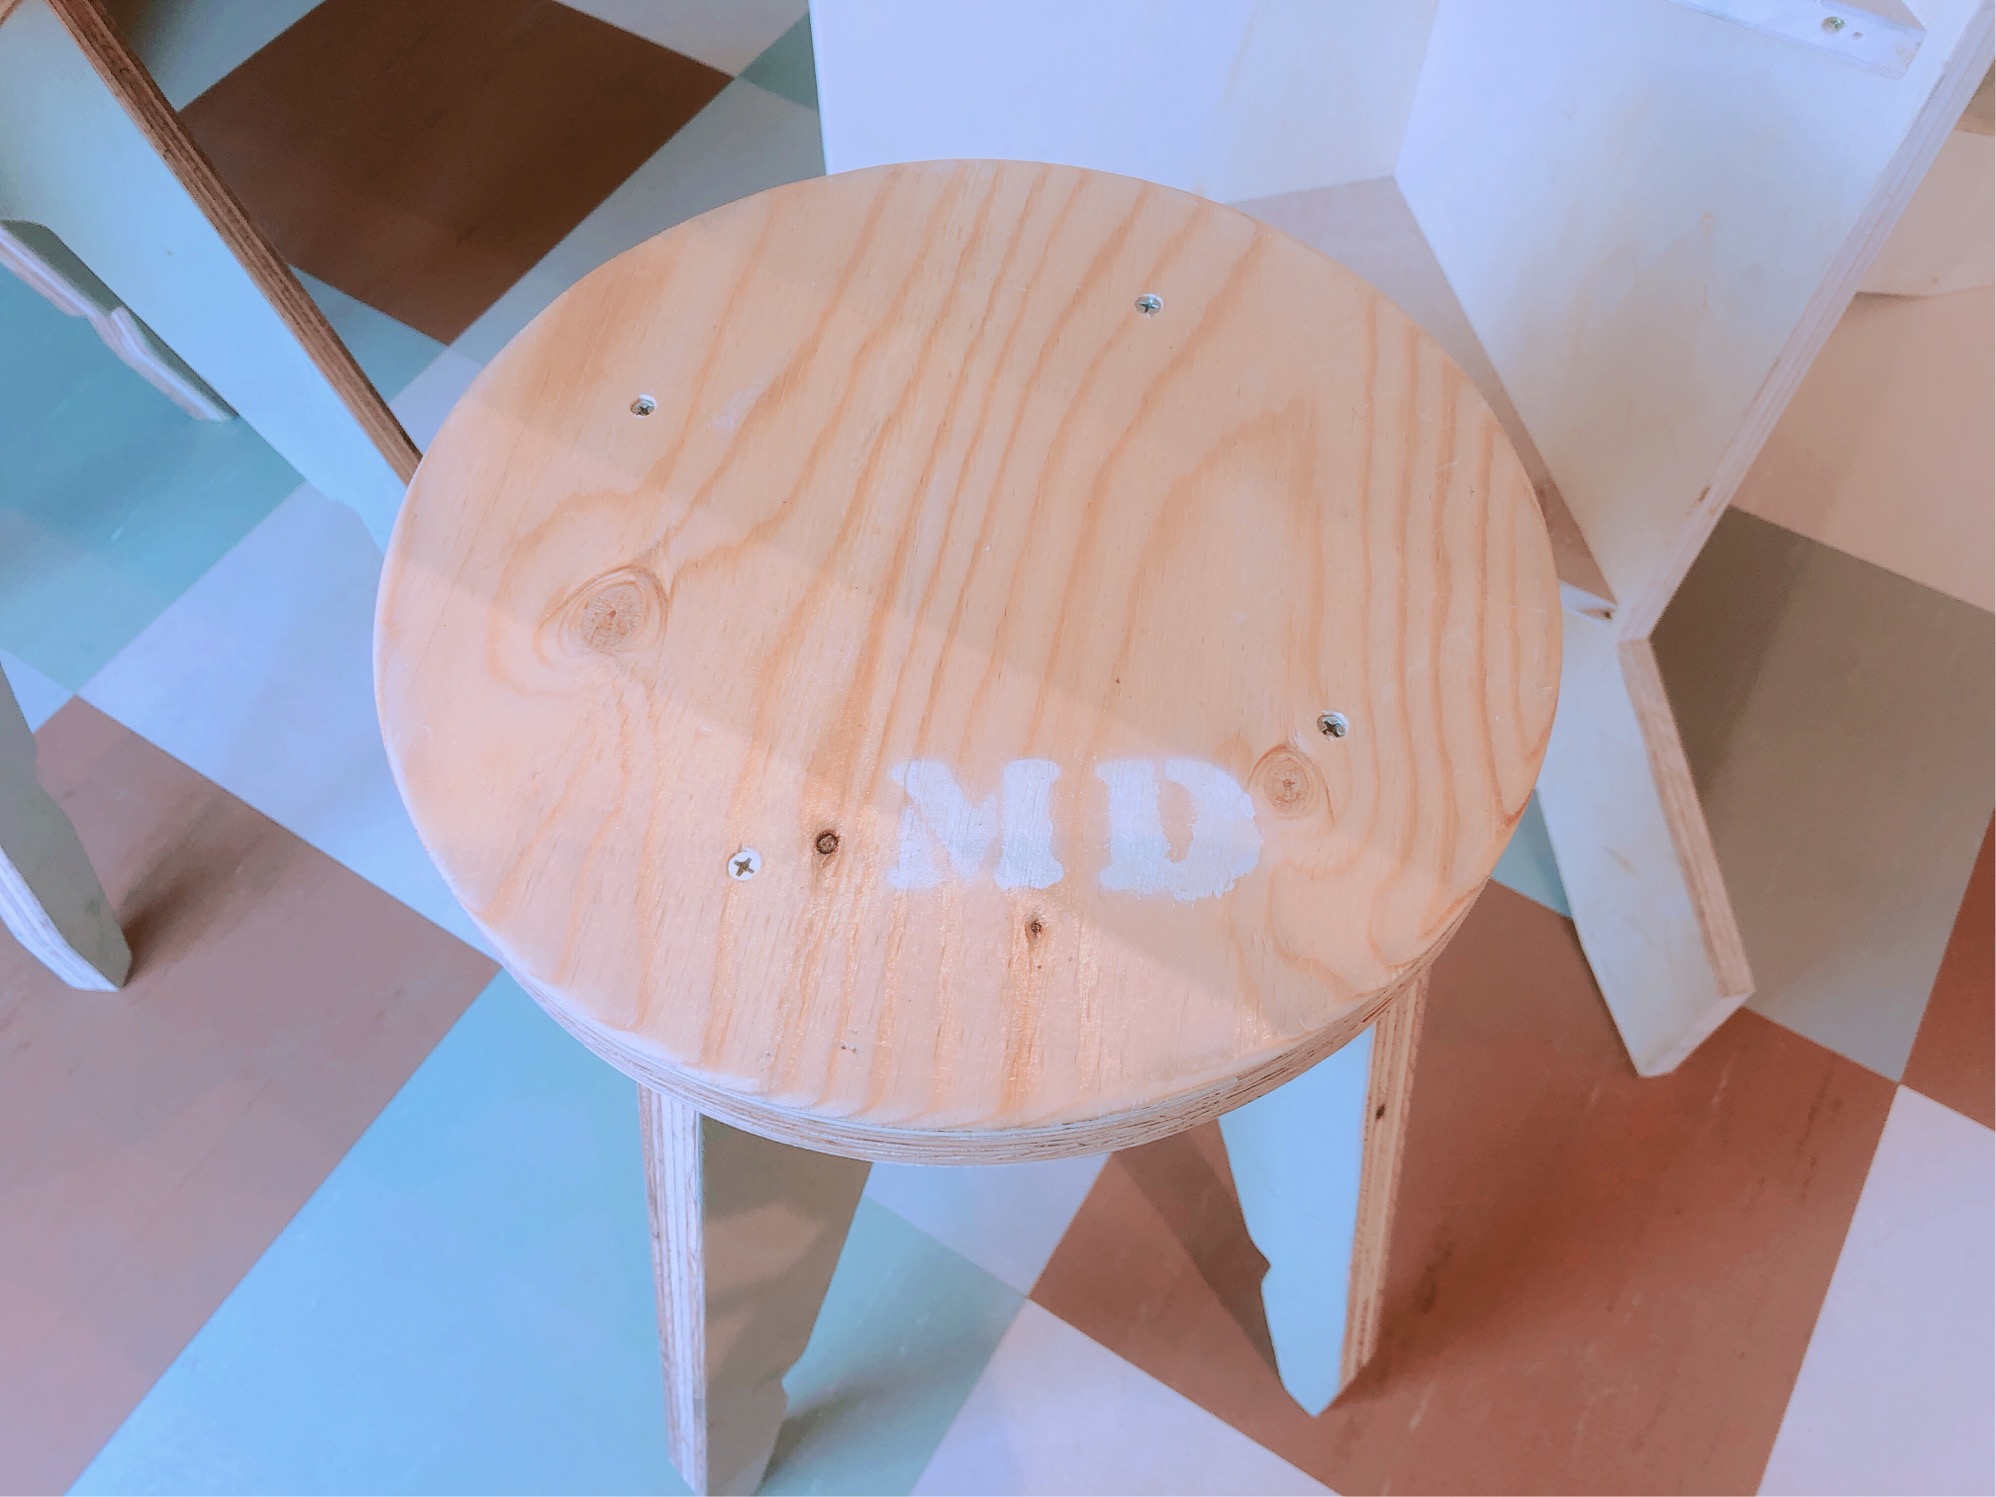 ミサキドーナツの椅子。MISAKI DONUTSのイニシャル＝MDが書かれた椅子が可愛らしい。